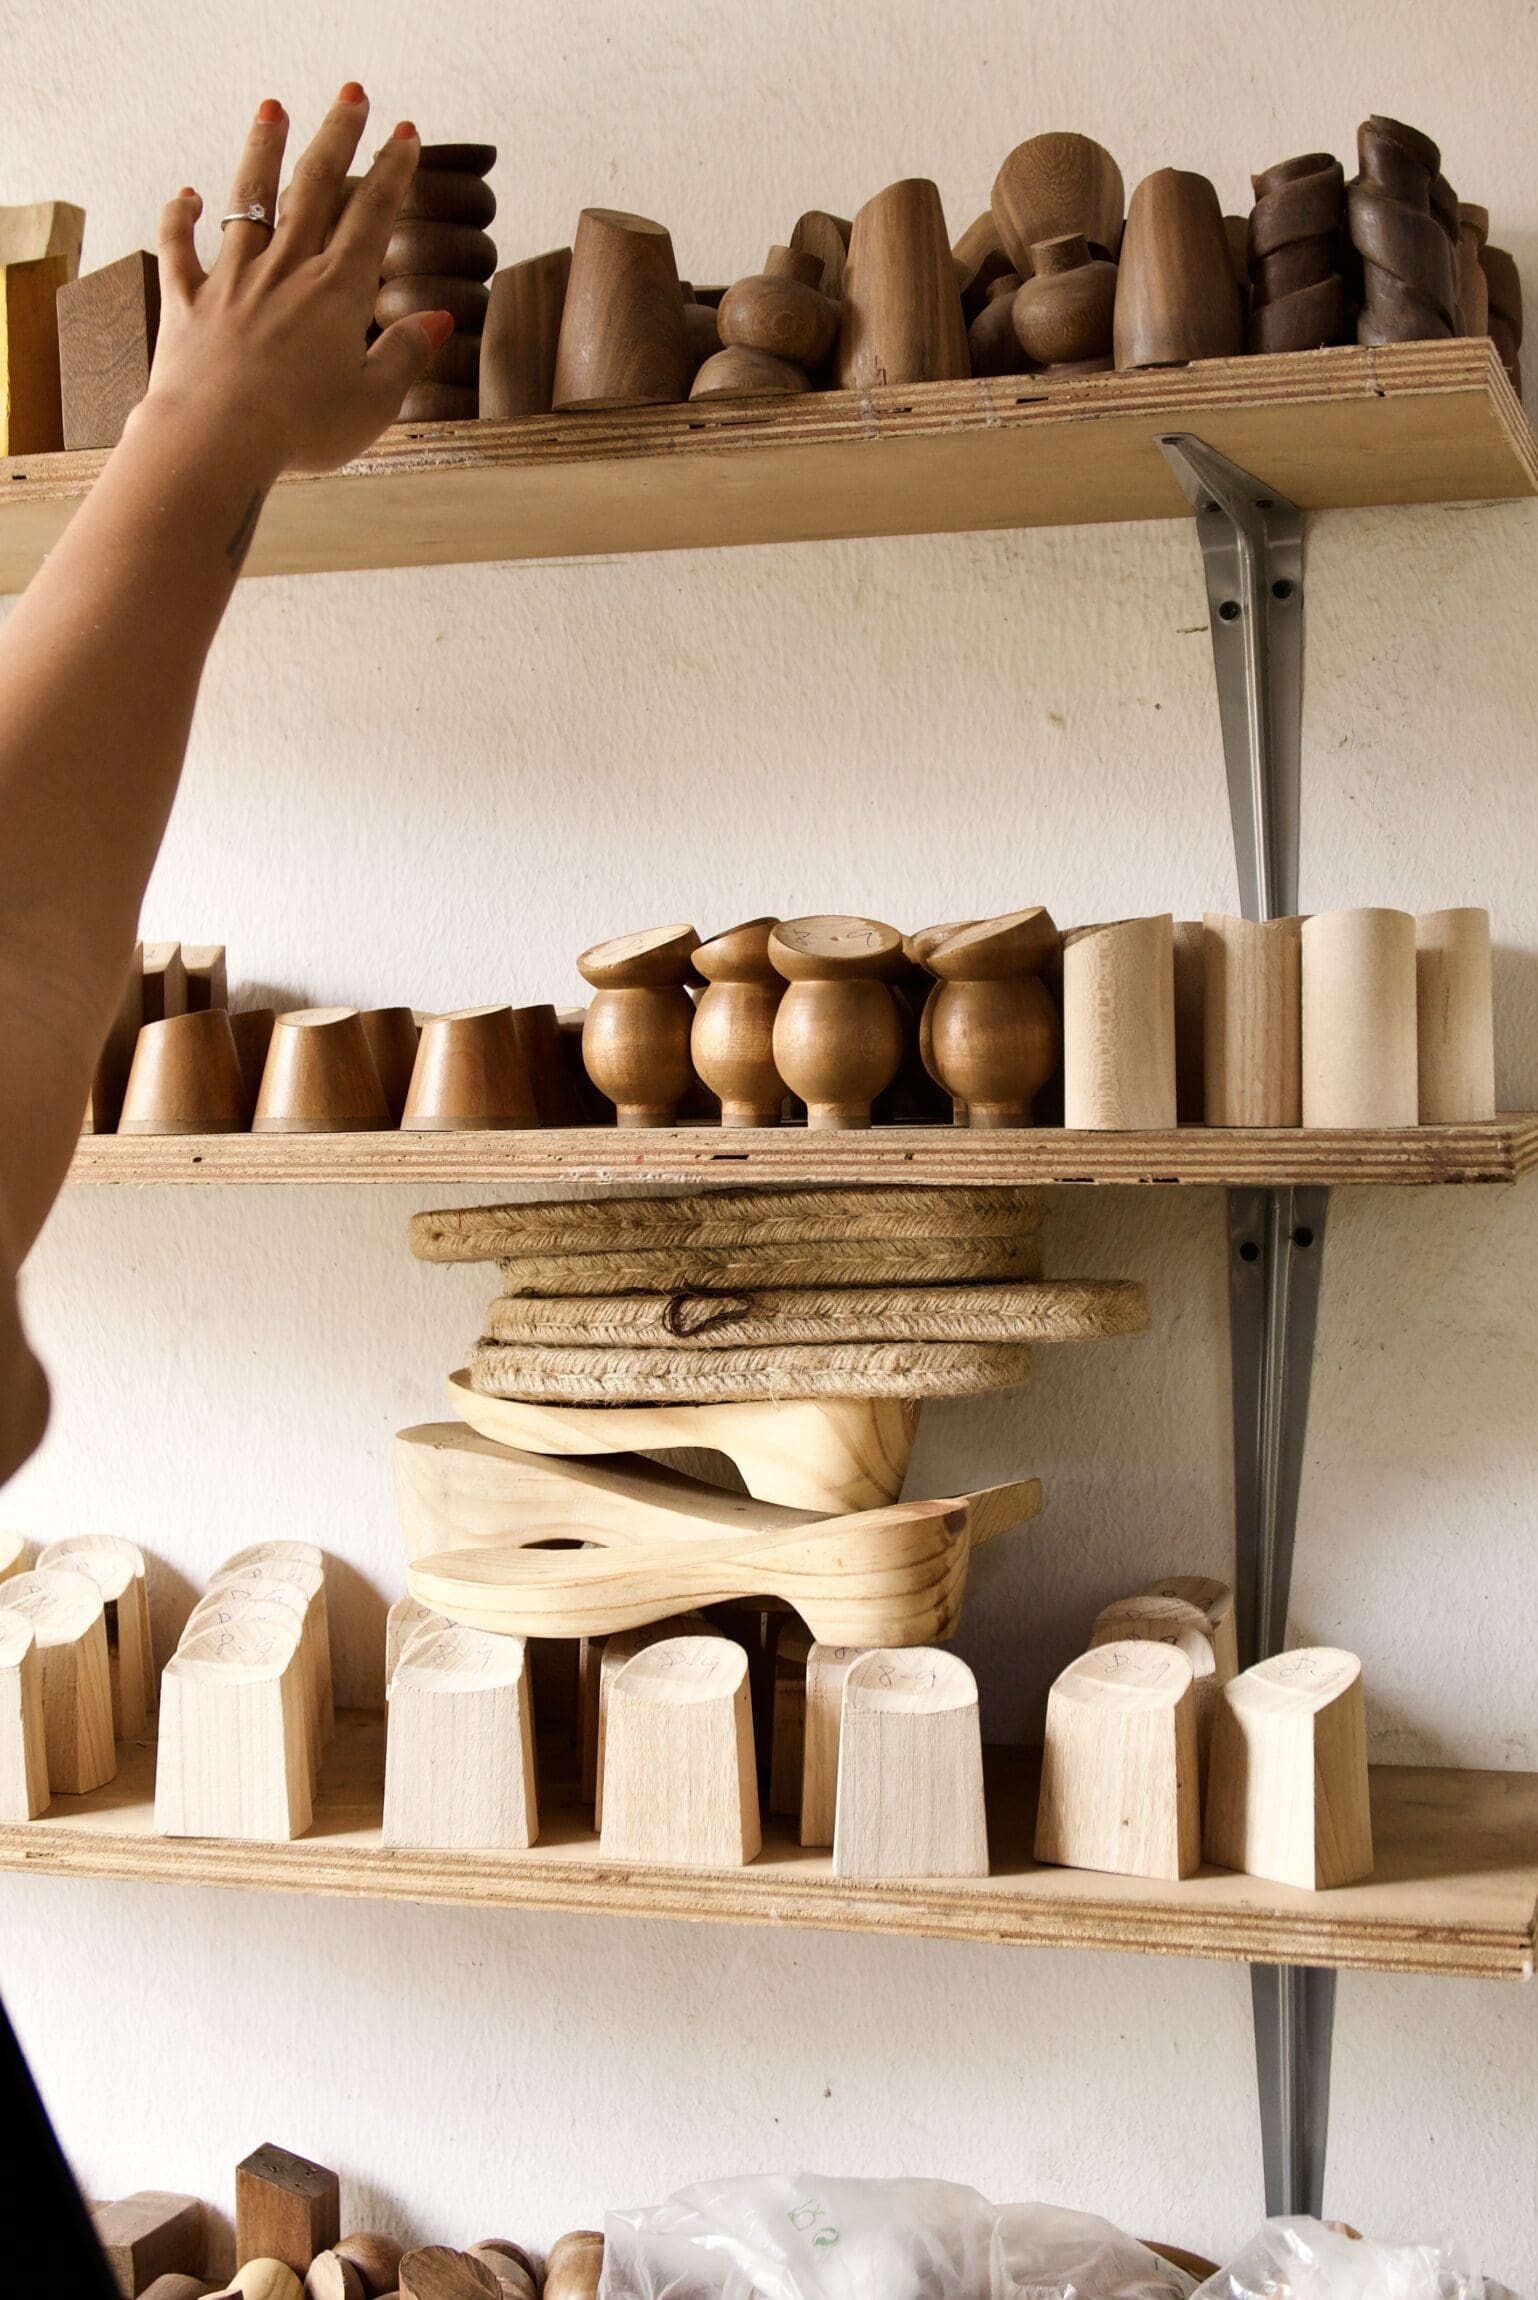 Ceramics on a shelf by Akudo Iheakanwa